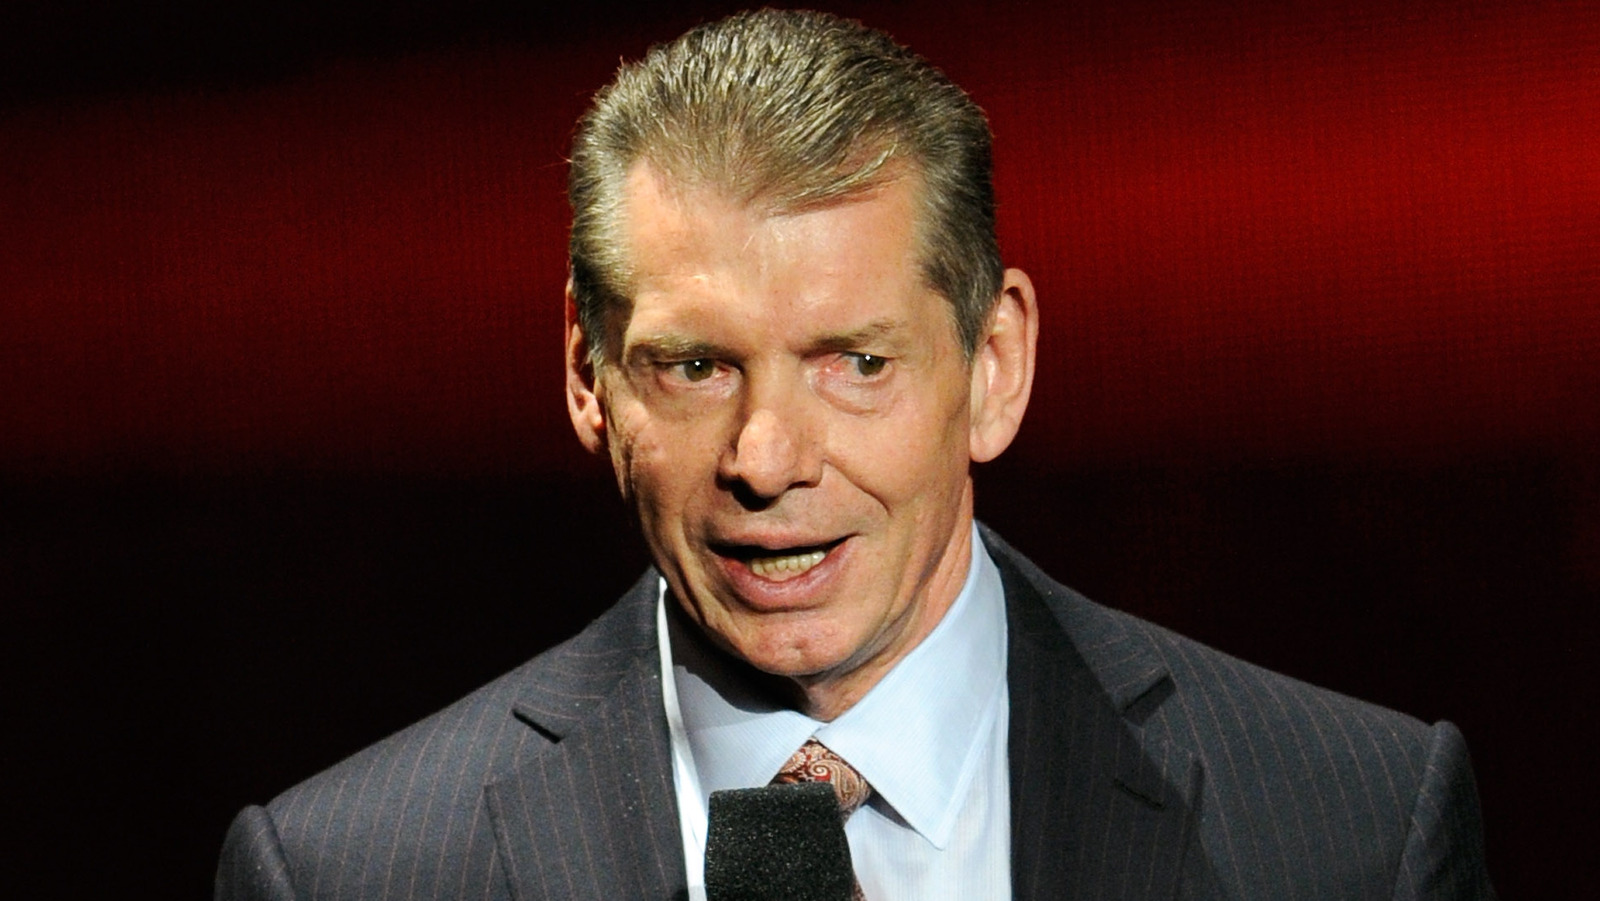 Abogado que representa al demandante en WWE, la demanda de Vince McMahon publica una declaración